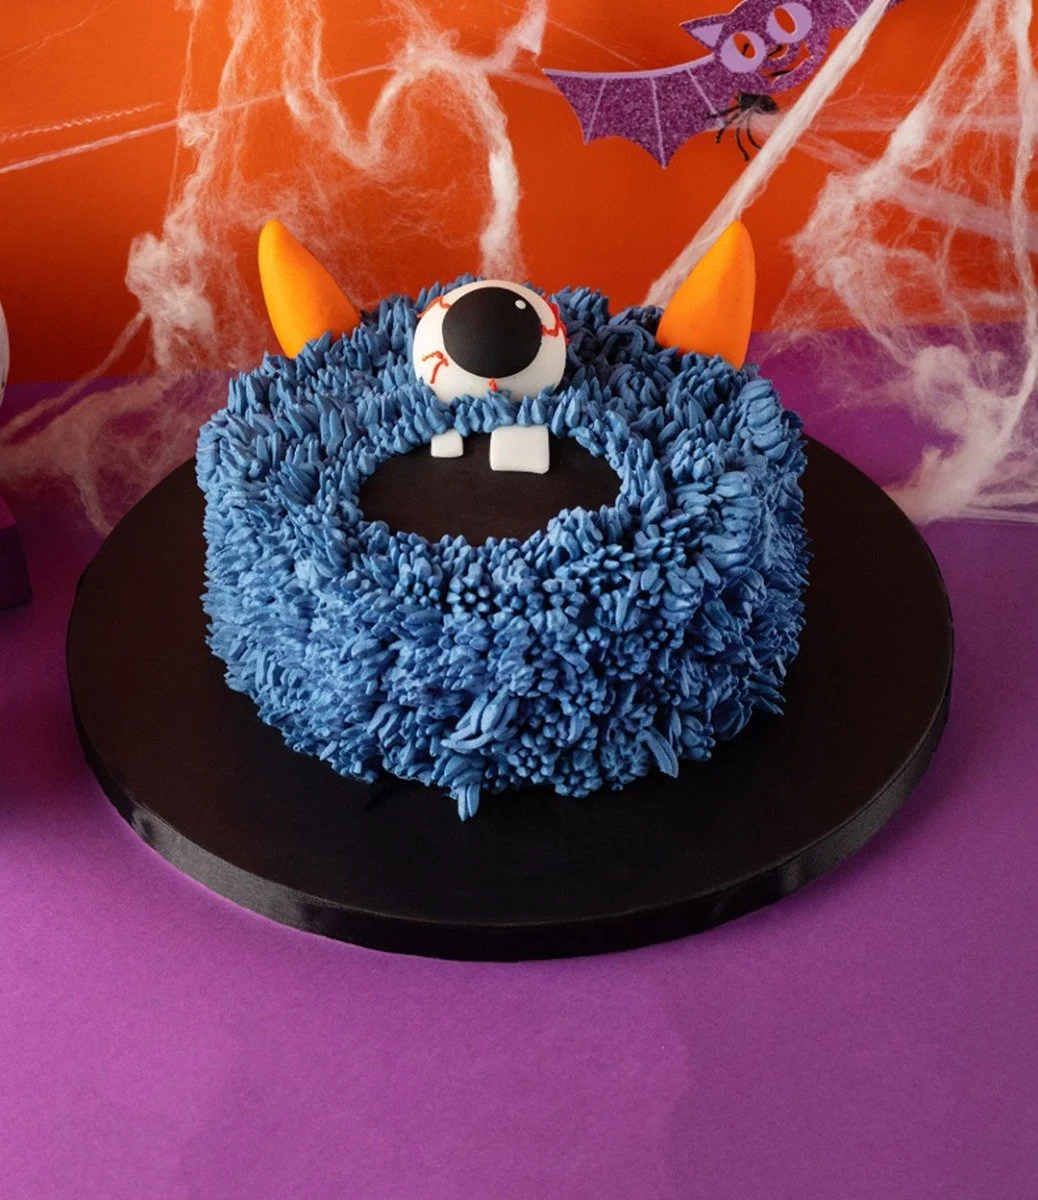 Furry Monster Cake by Cake Social